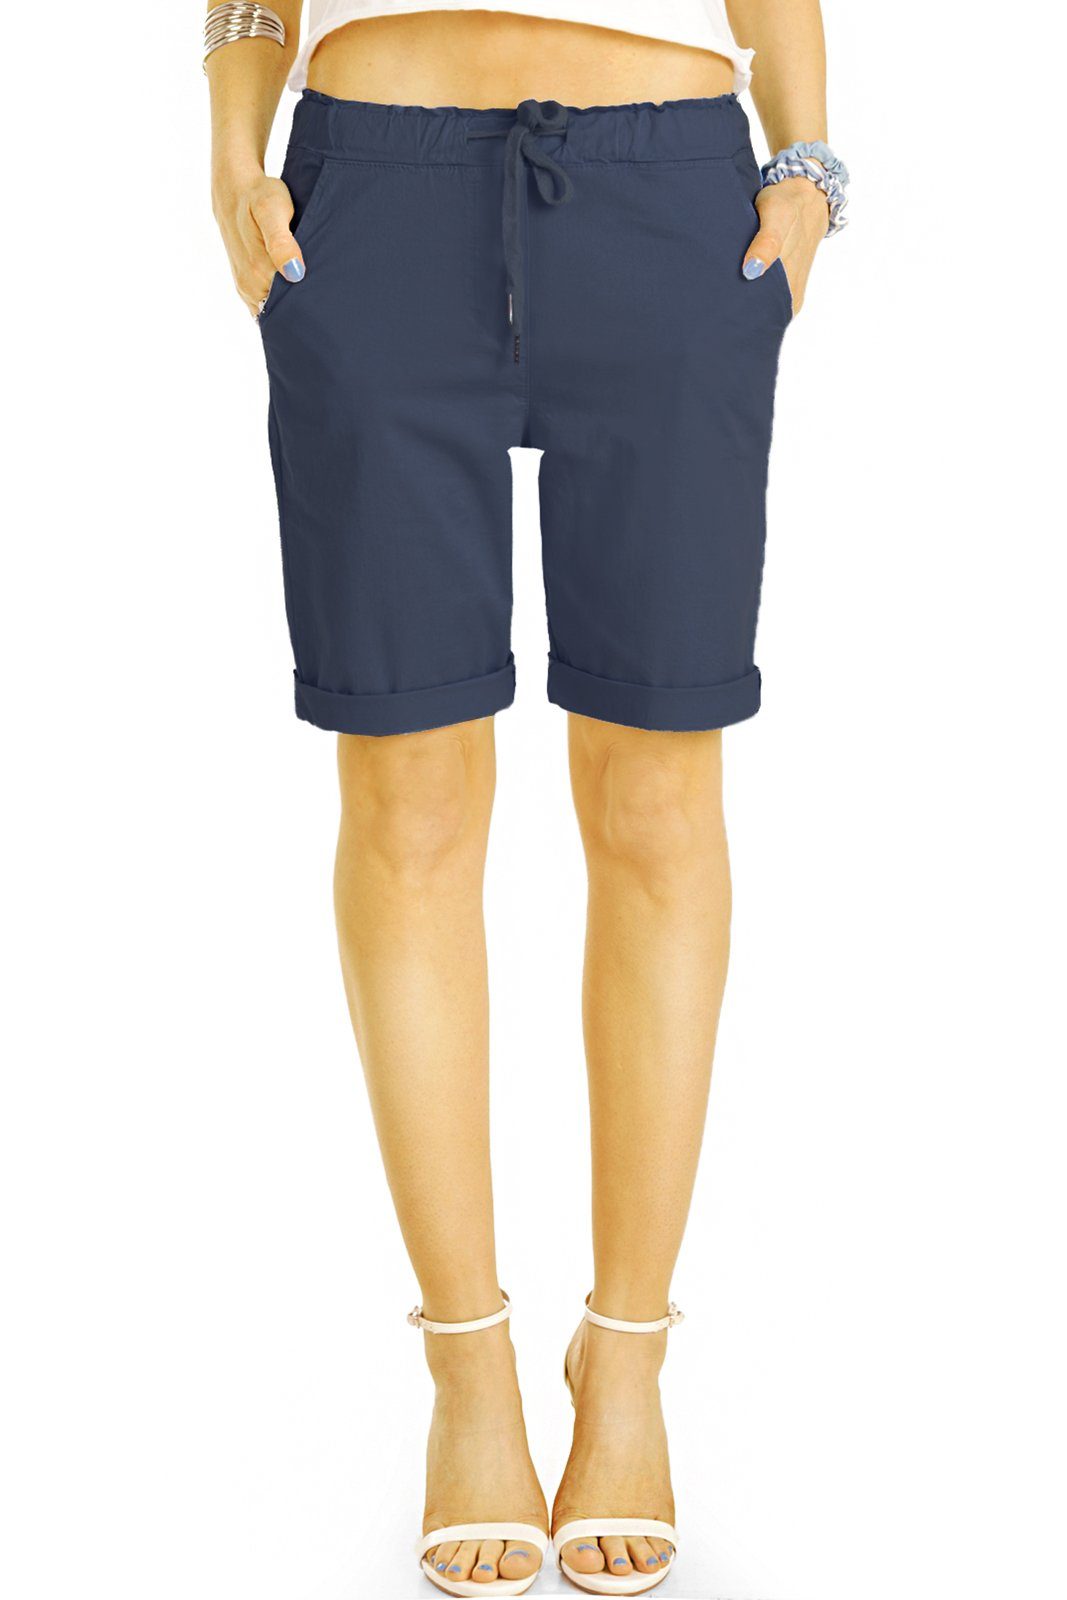 be styled Shorts Chino Stoff Shorts - Kurze lockere Hosen mit Kordelzug -  Damen - h28a mit Kordelzug, in Unifarben, mit elastischem Bund